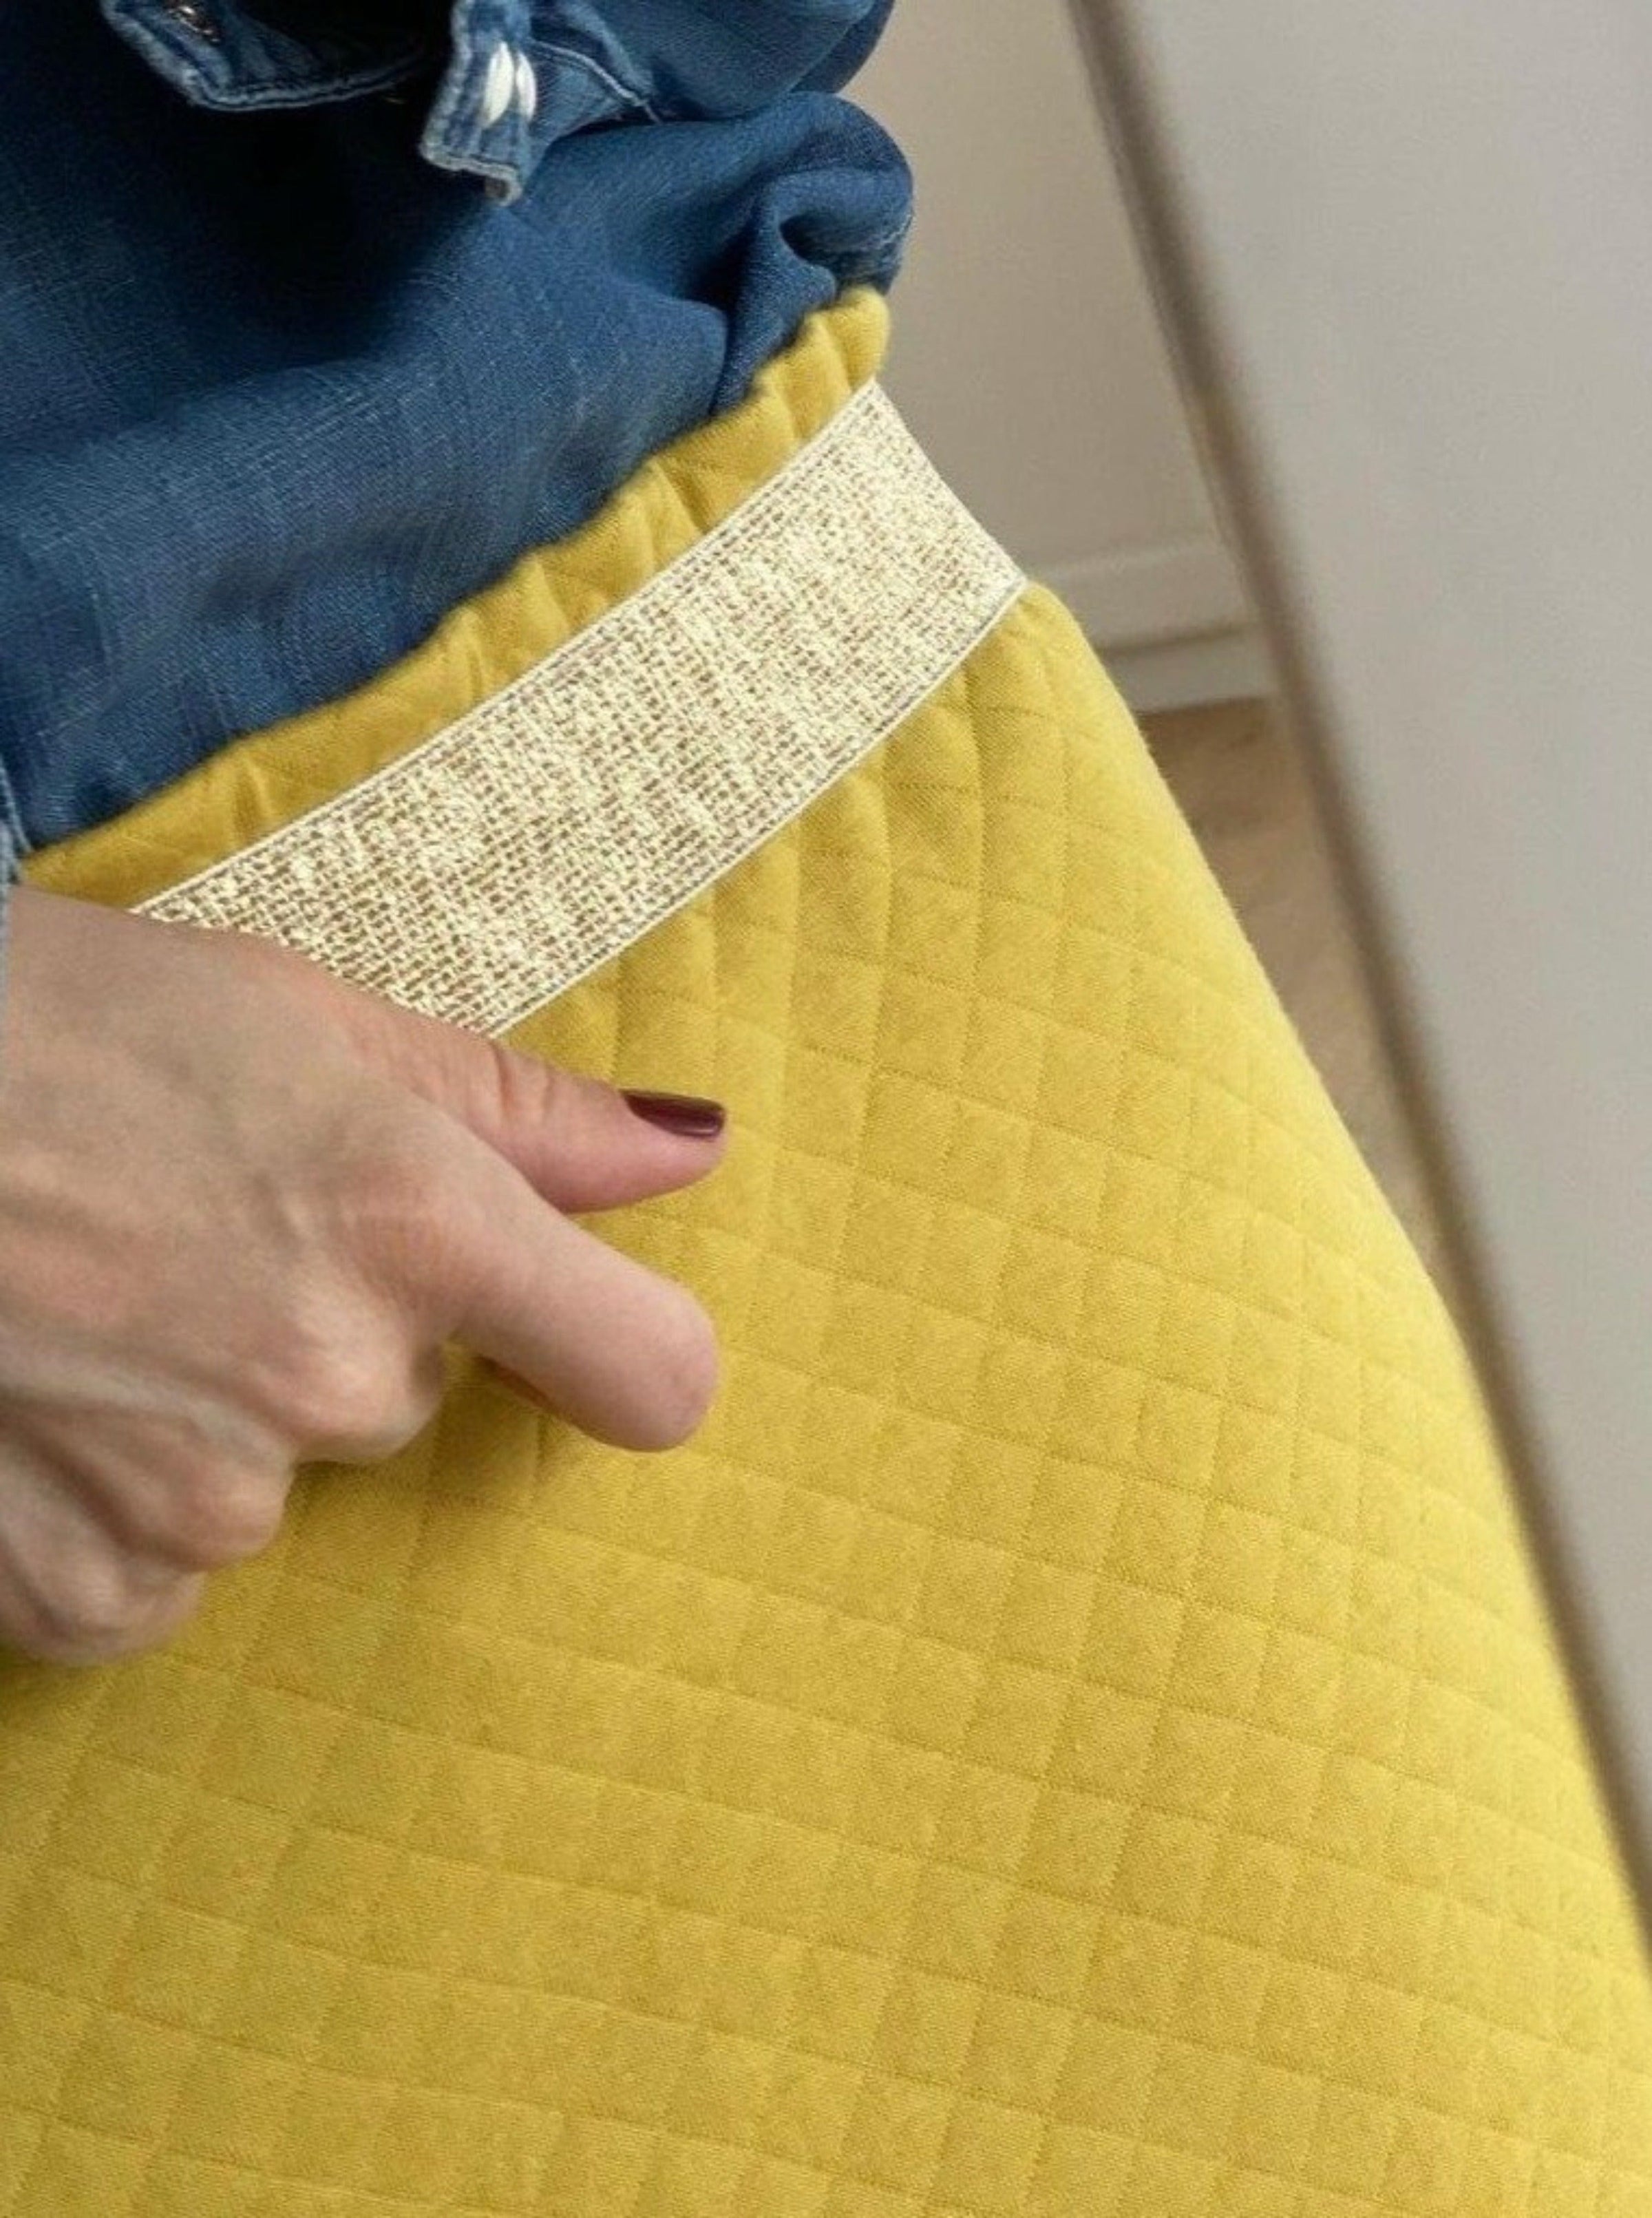 Jupe matelassée moutarde à taille élastiquée. Vous pouvez choisir l'élastique doré apparent ou dissimulé. Coupe légèrement en trapèze et longueur de la jupe sur mesure.